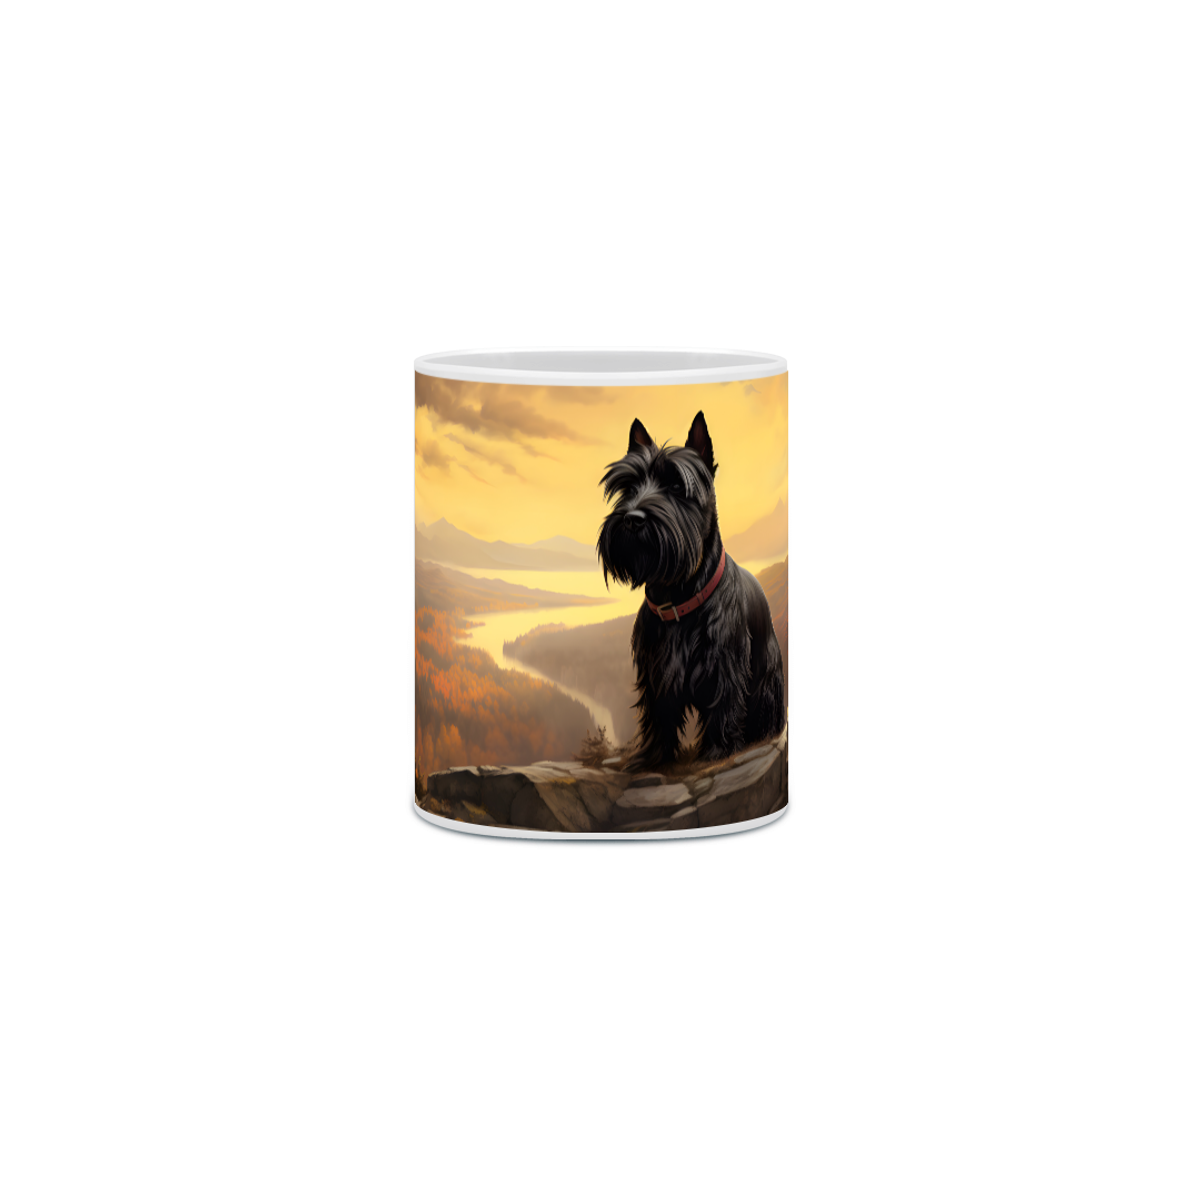 Nome do produto: Caneca Scottish Terrier com Arte Digital - #Autenticidade 0019